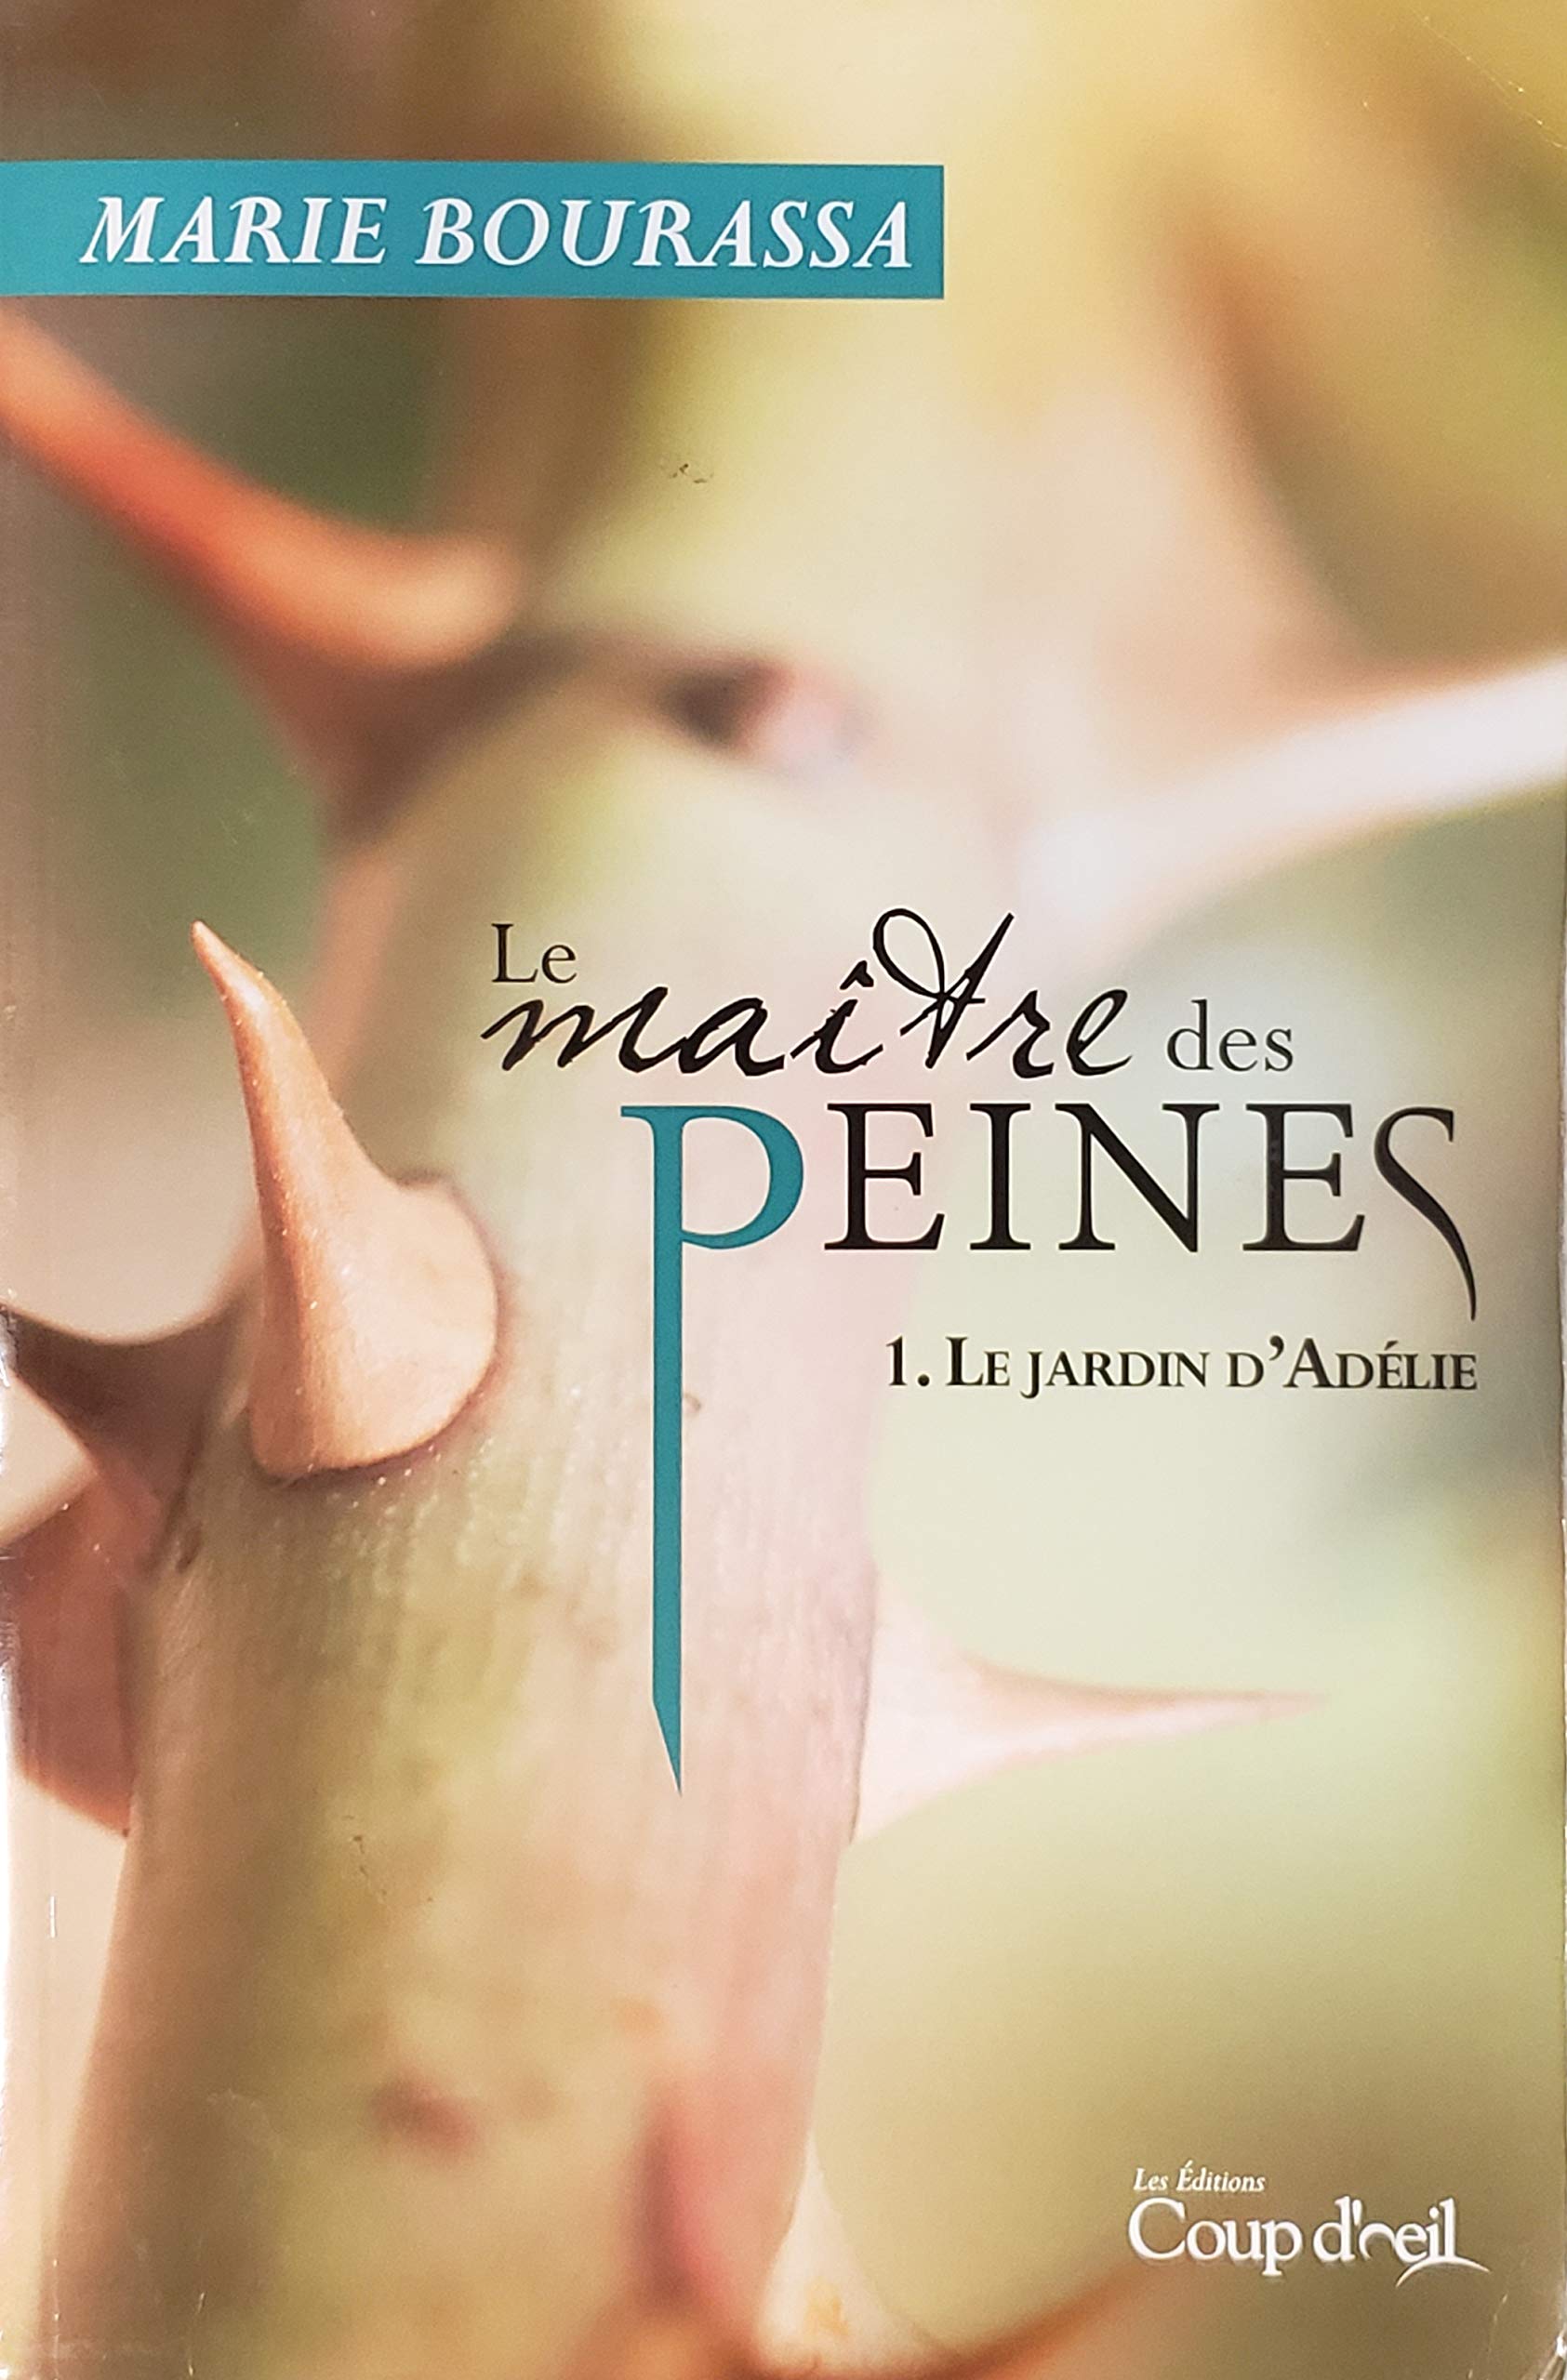 Livre ISBN 2897317310 Le maître des peines # 1 : Le jardin d'Adélie (Marie Bourassa)